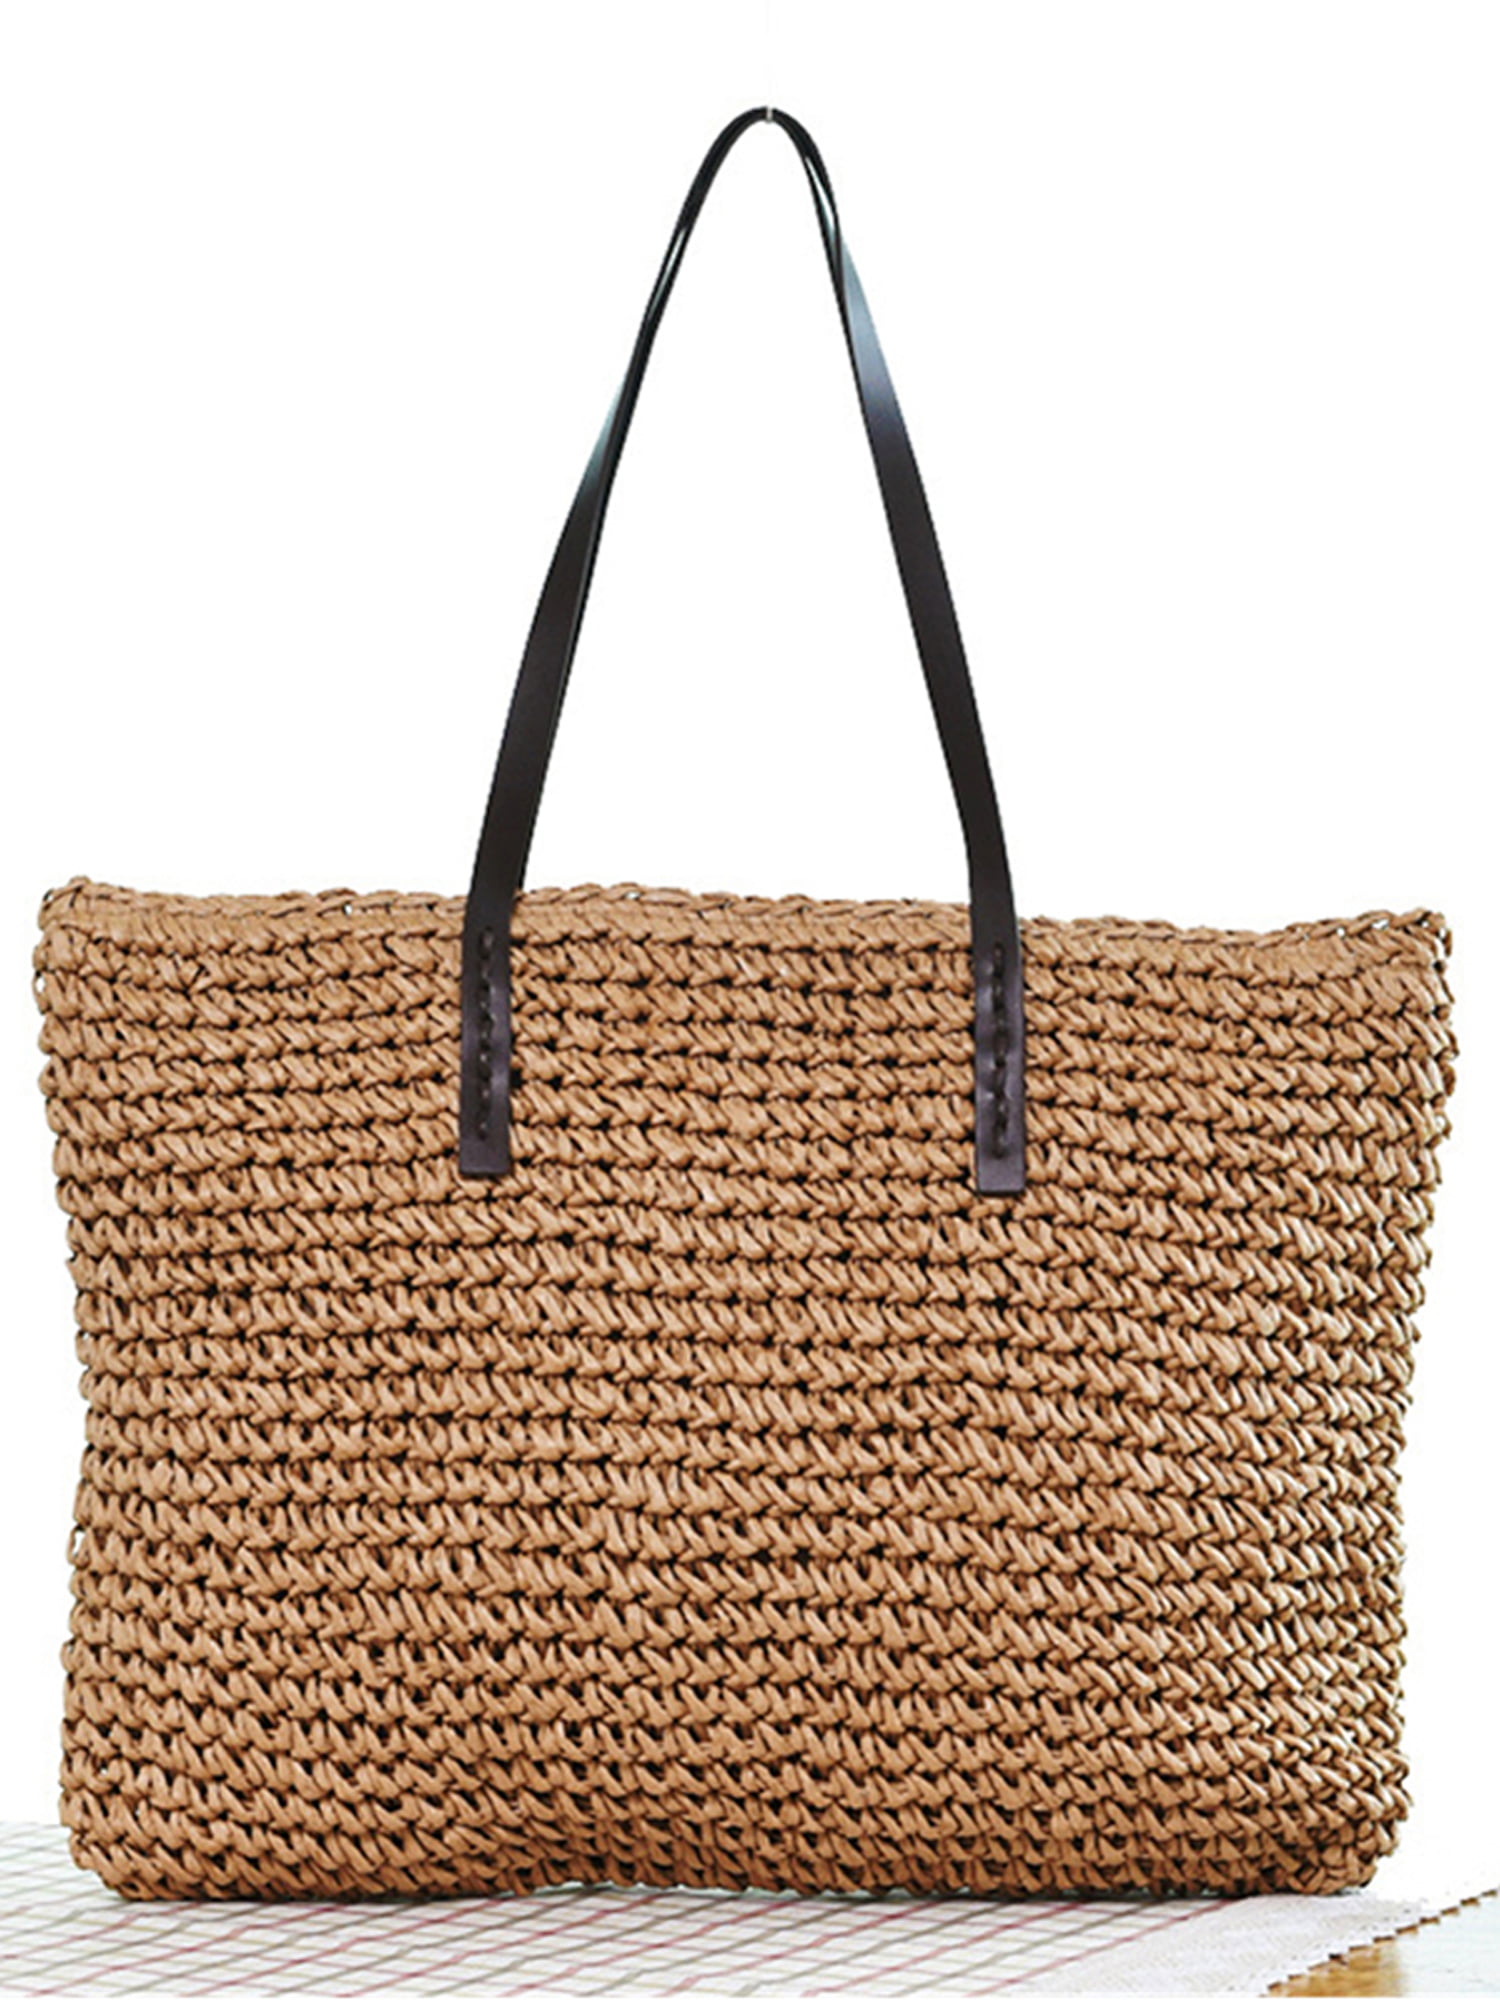 Handmade Women Handbag Summer Beach Bag Rattan Woven Knitted Straw Shoulder Bag 